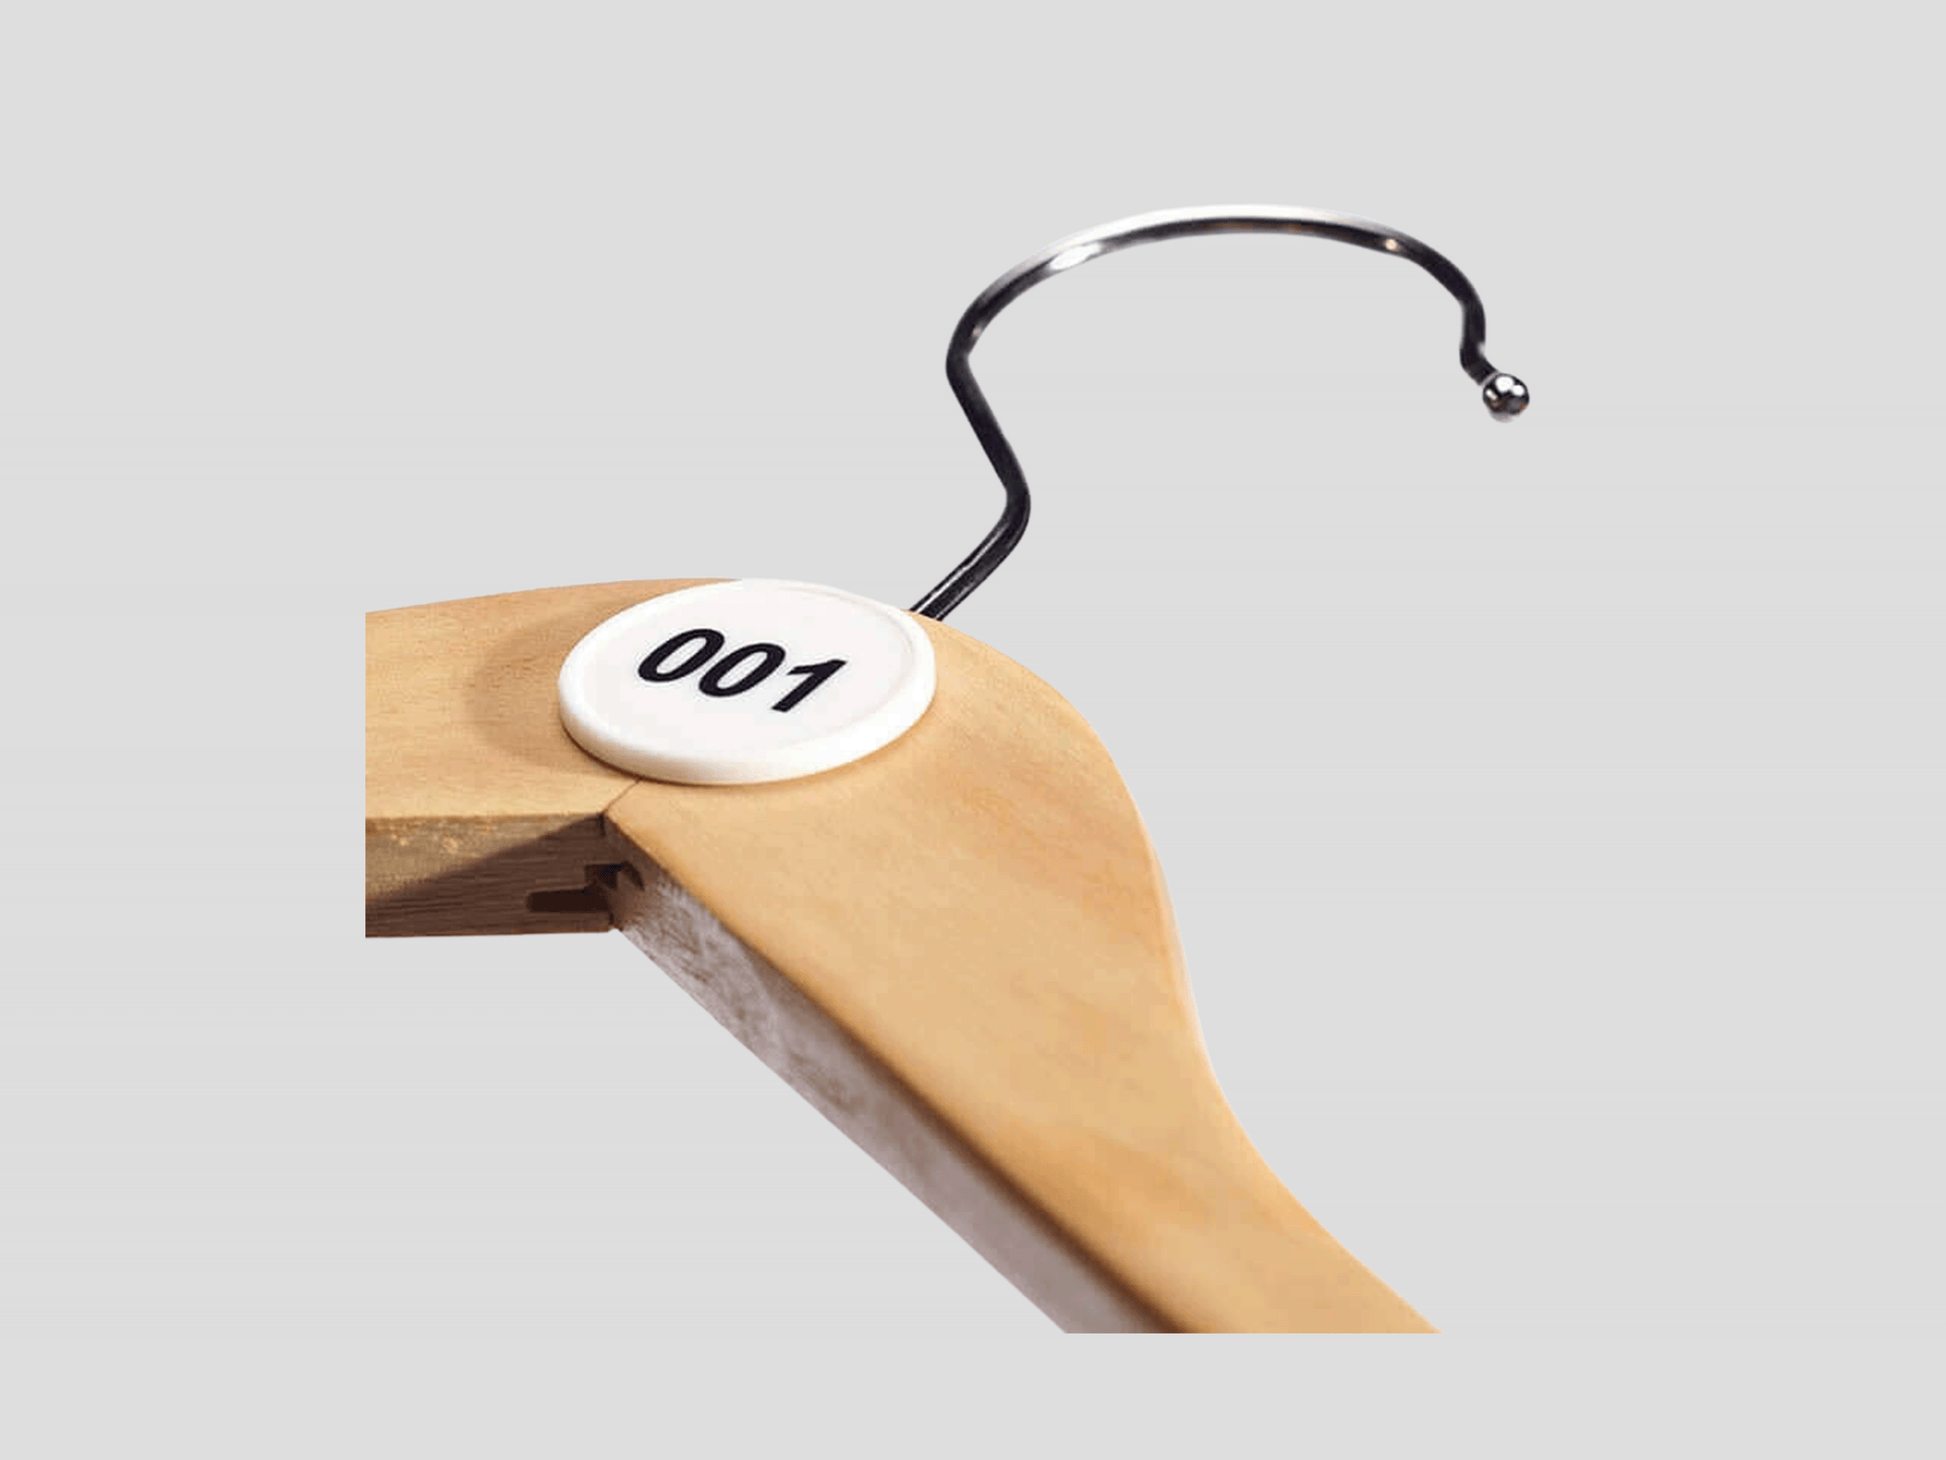 En trähängare med siffran 100 på, gjord av Garderob numre plast klister.